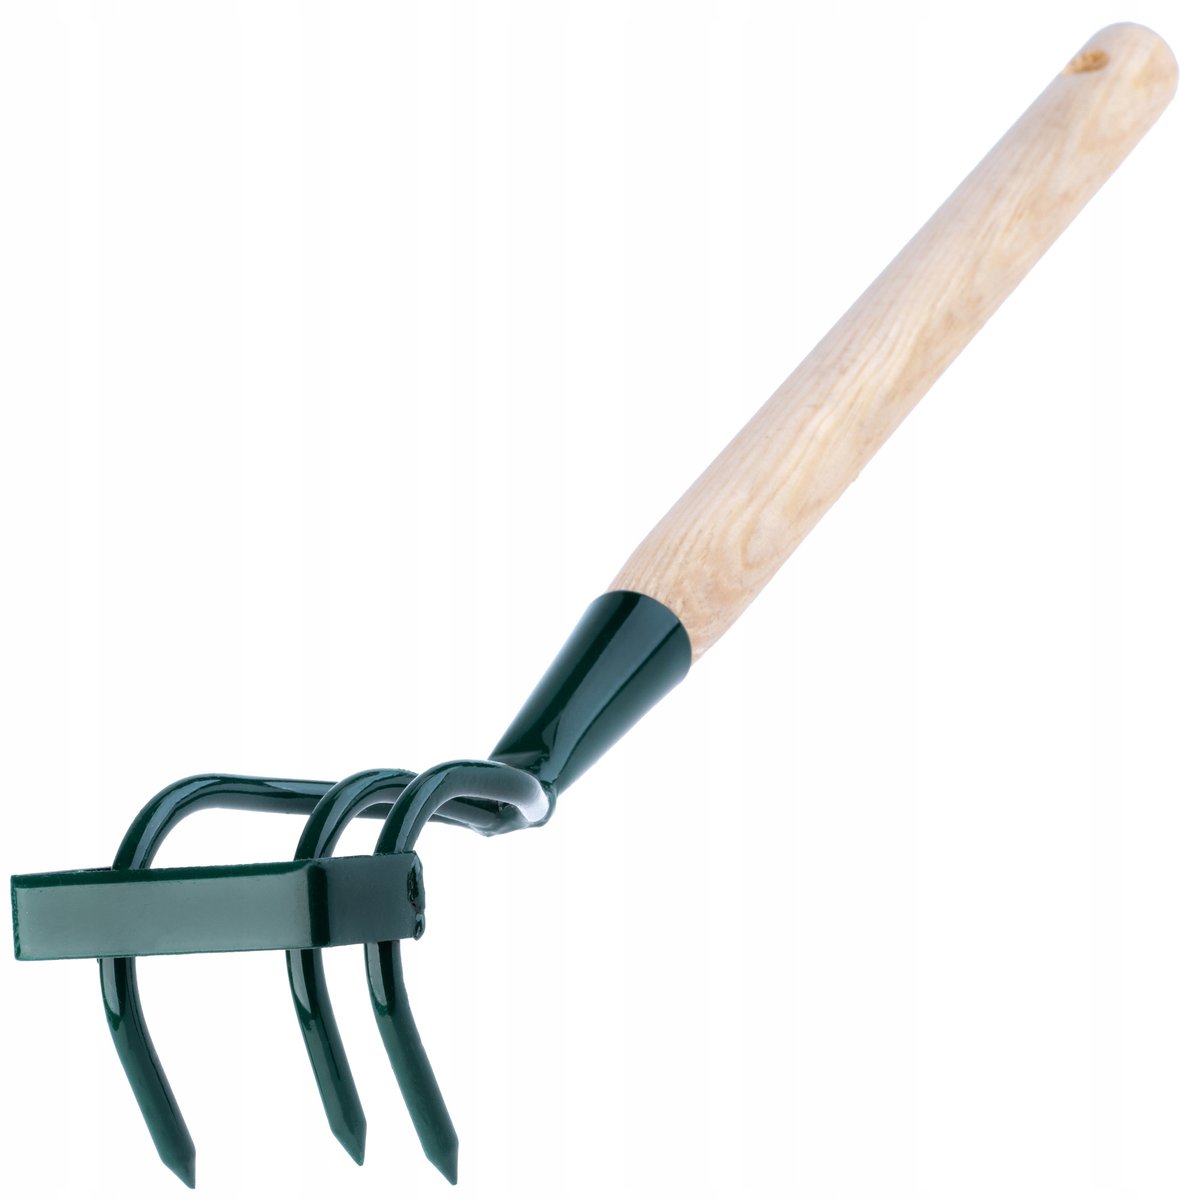 Zdjęcia - Pozostałe narzędzia ogrodnicze Kultywator ręczny 3-zębny 43 cm, zielony